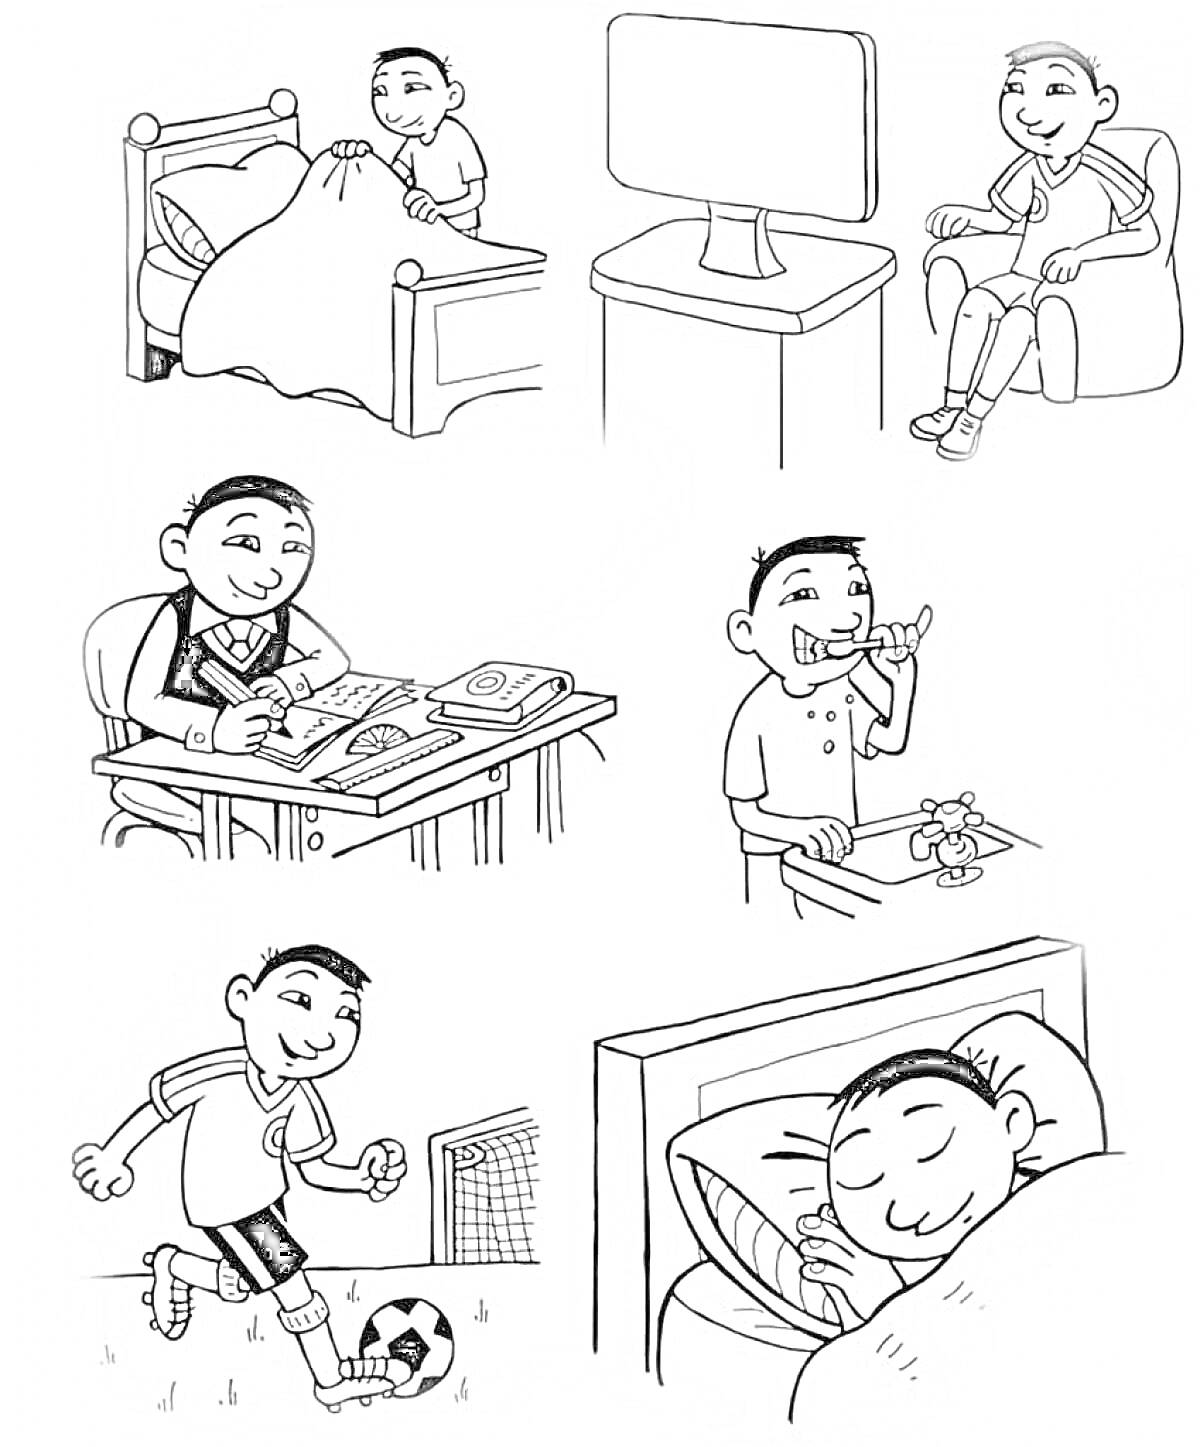 Раскраска Мальчик в течение дня: вставание с кровати, просмотр телевизора, учеба, чистка зубов, игра в футбол, сон